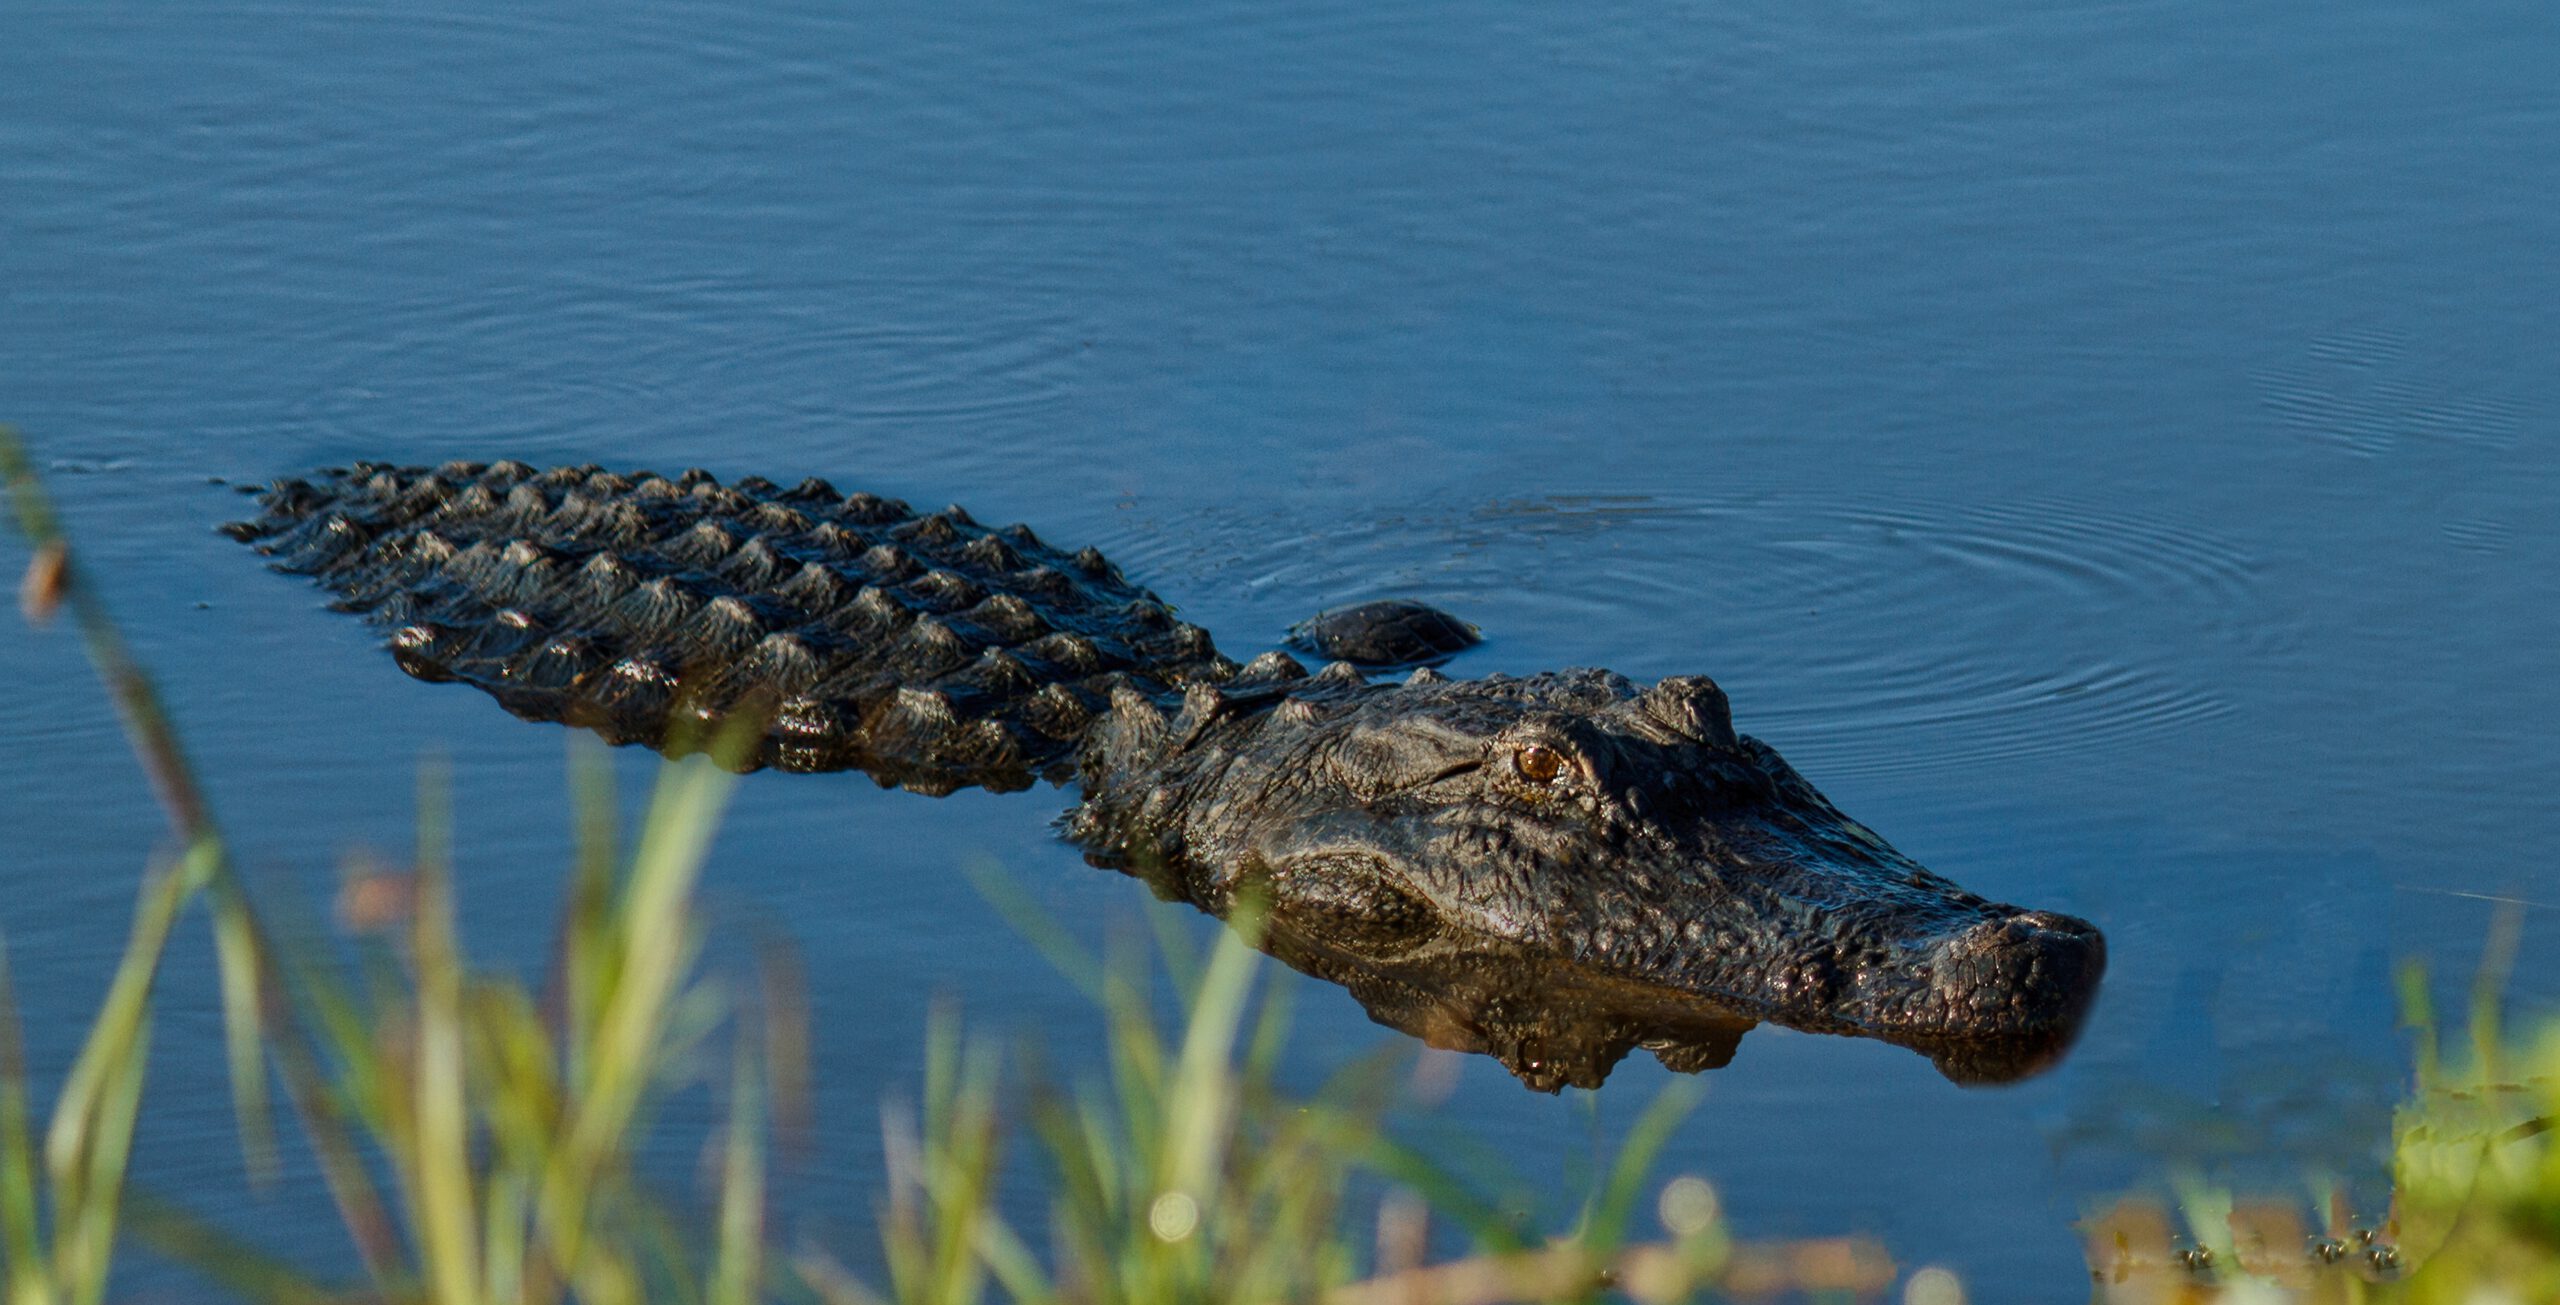 closeup shot of a crocodile lying down in the wate 2022 12 31 04 01 11 utc scaled